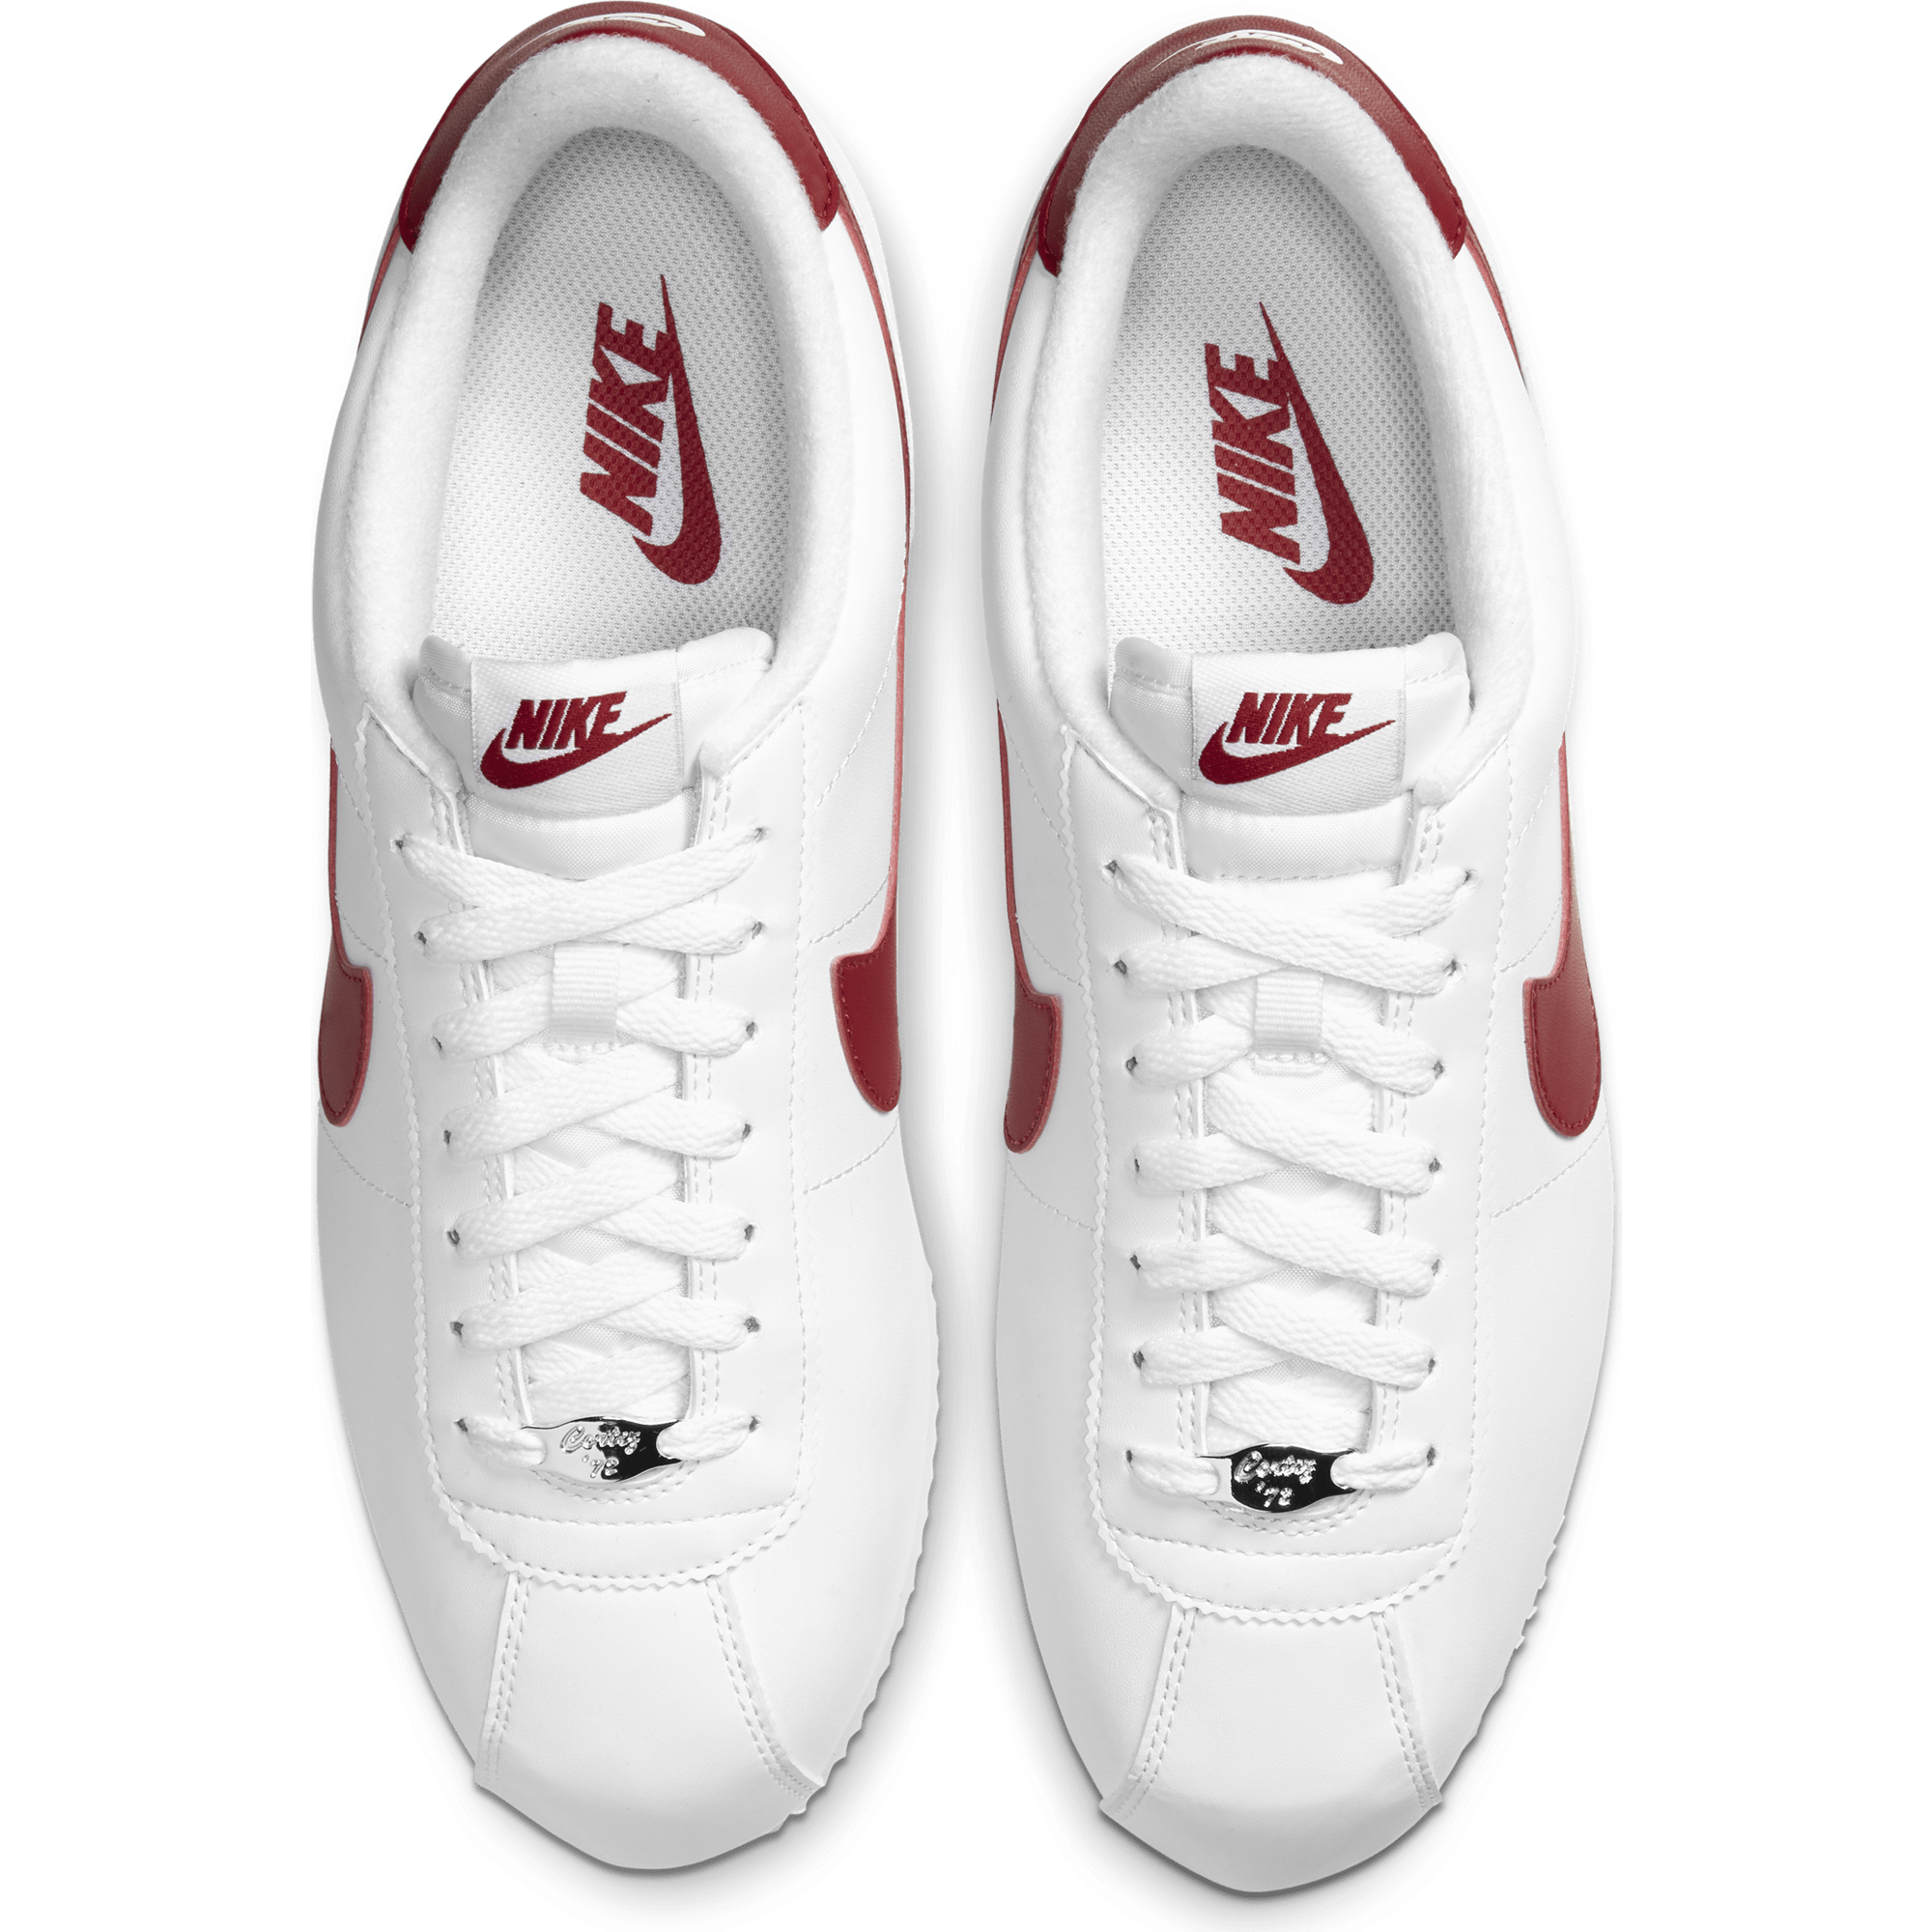 Nike Cortez Men's Shoes.